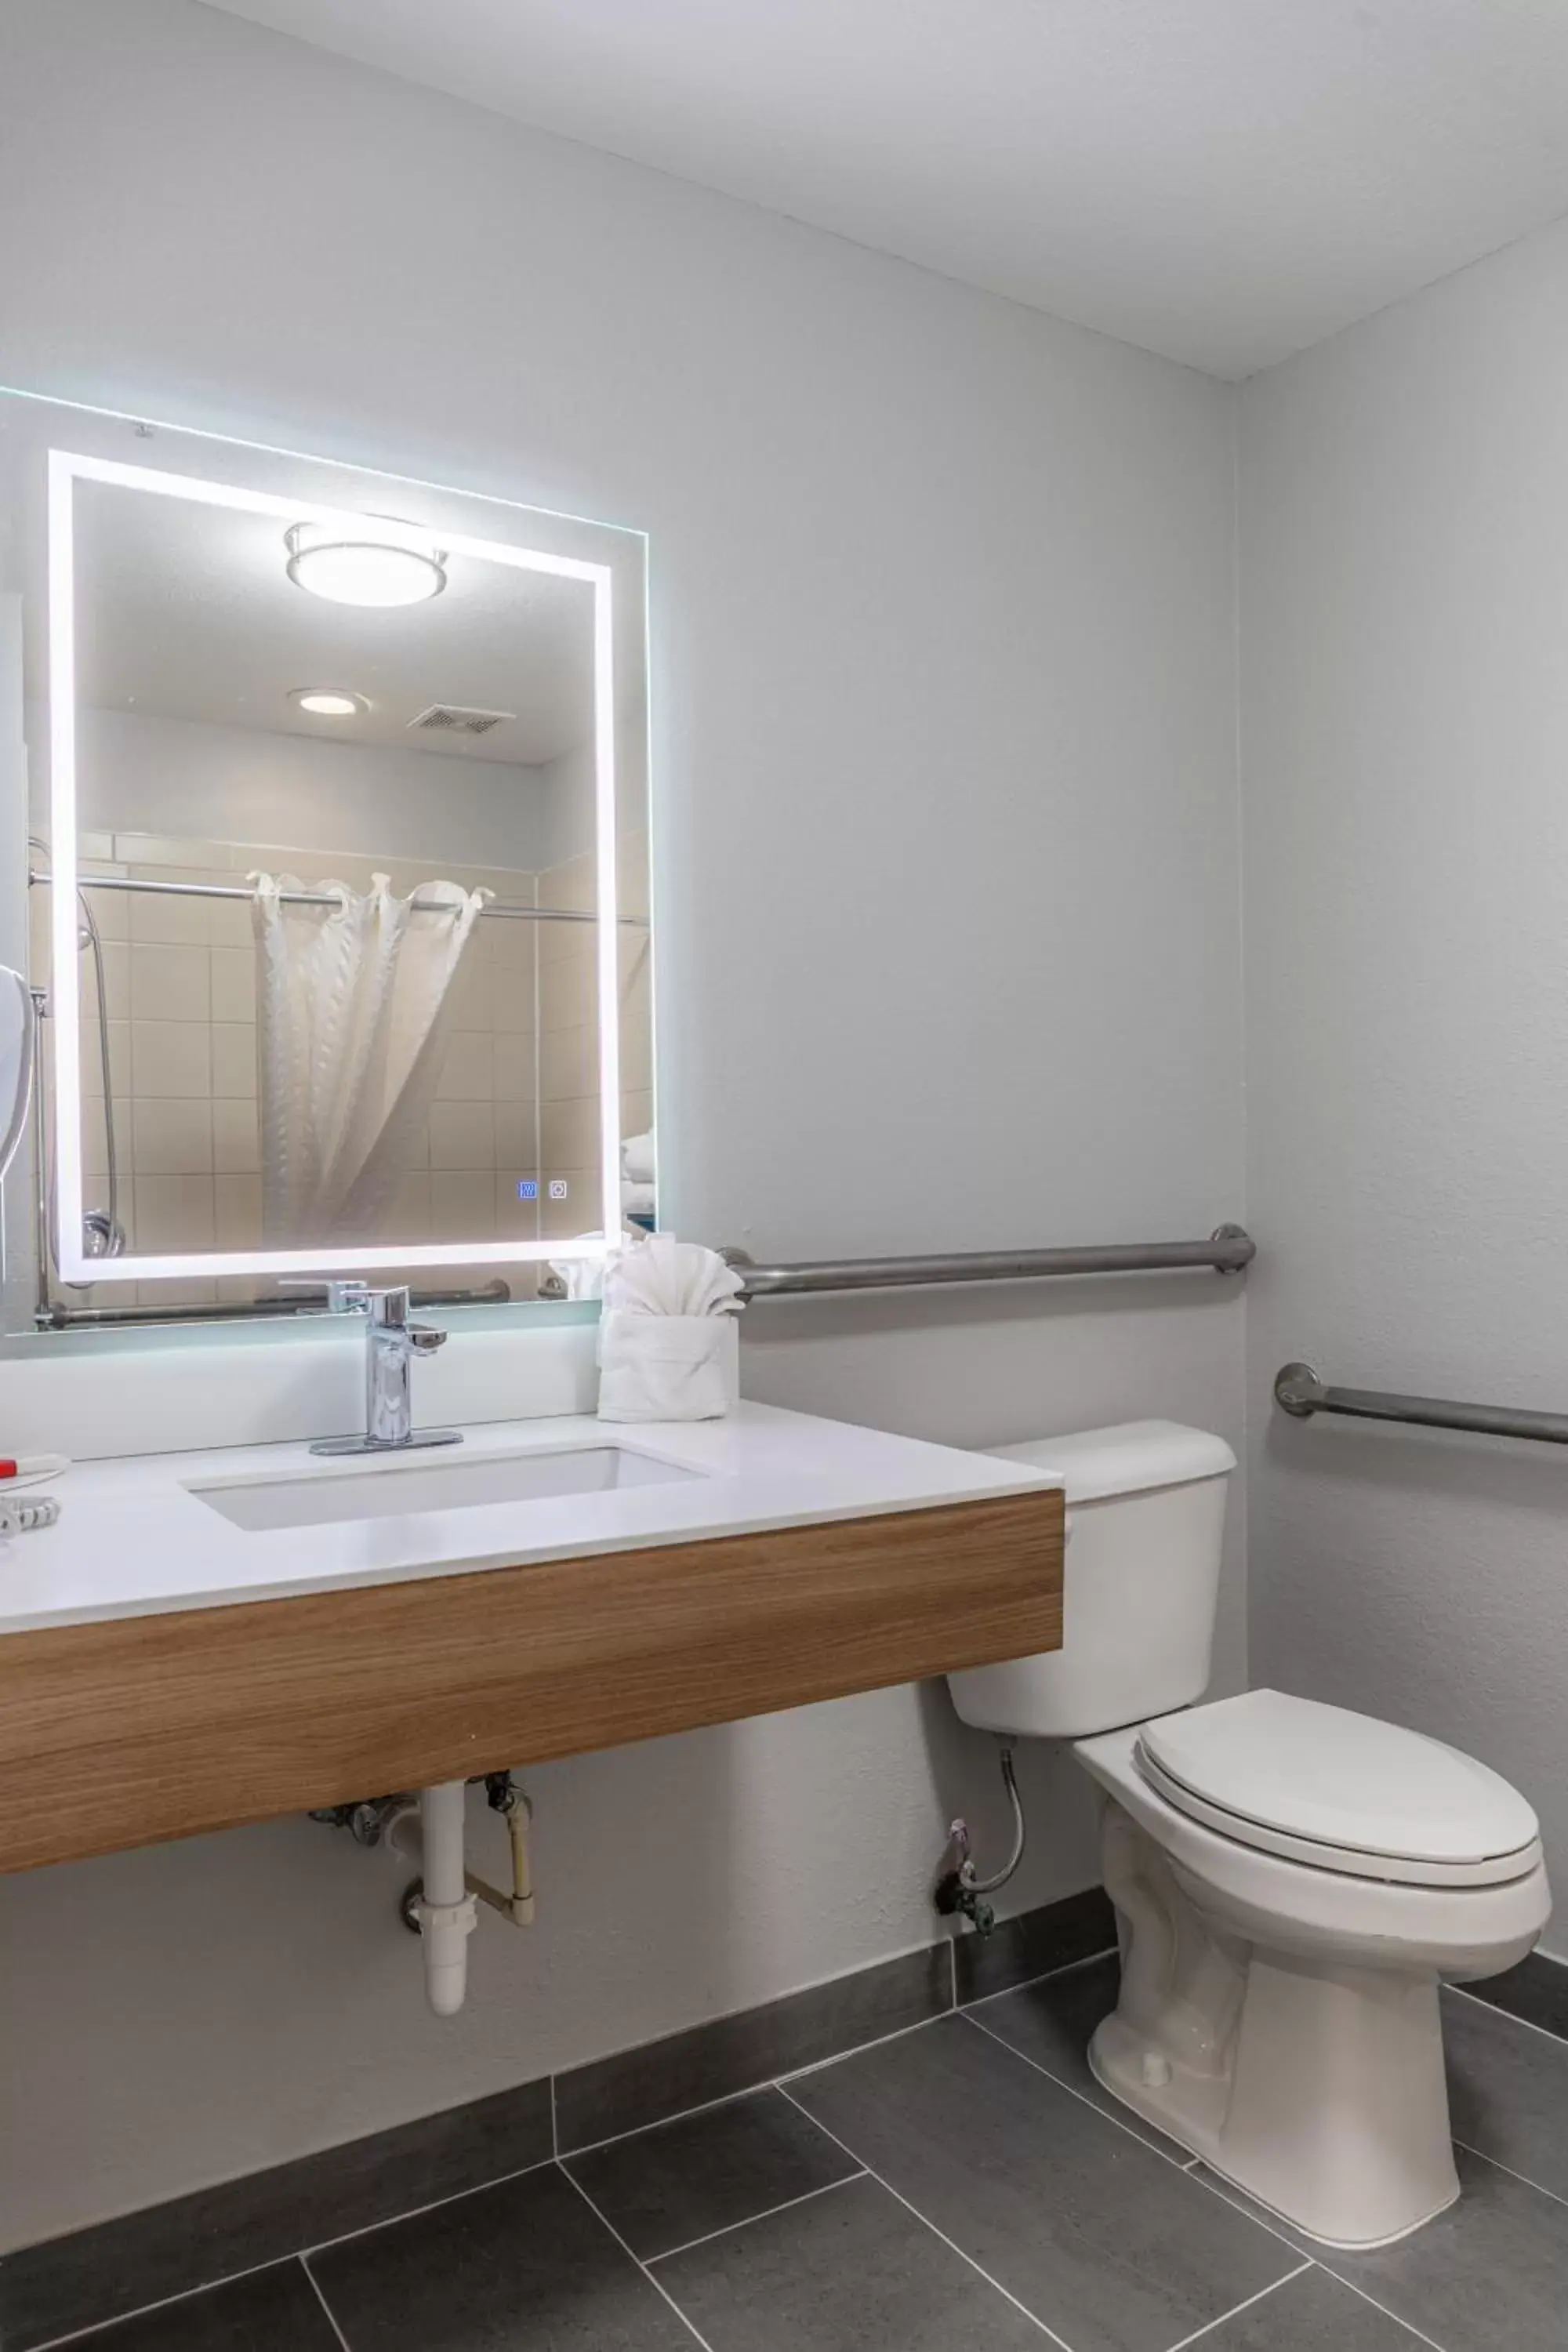 Bathroom in Microtel Inn & Suites by Wyndham Kingsland